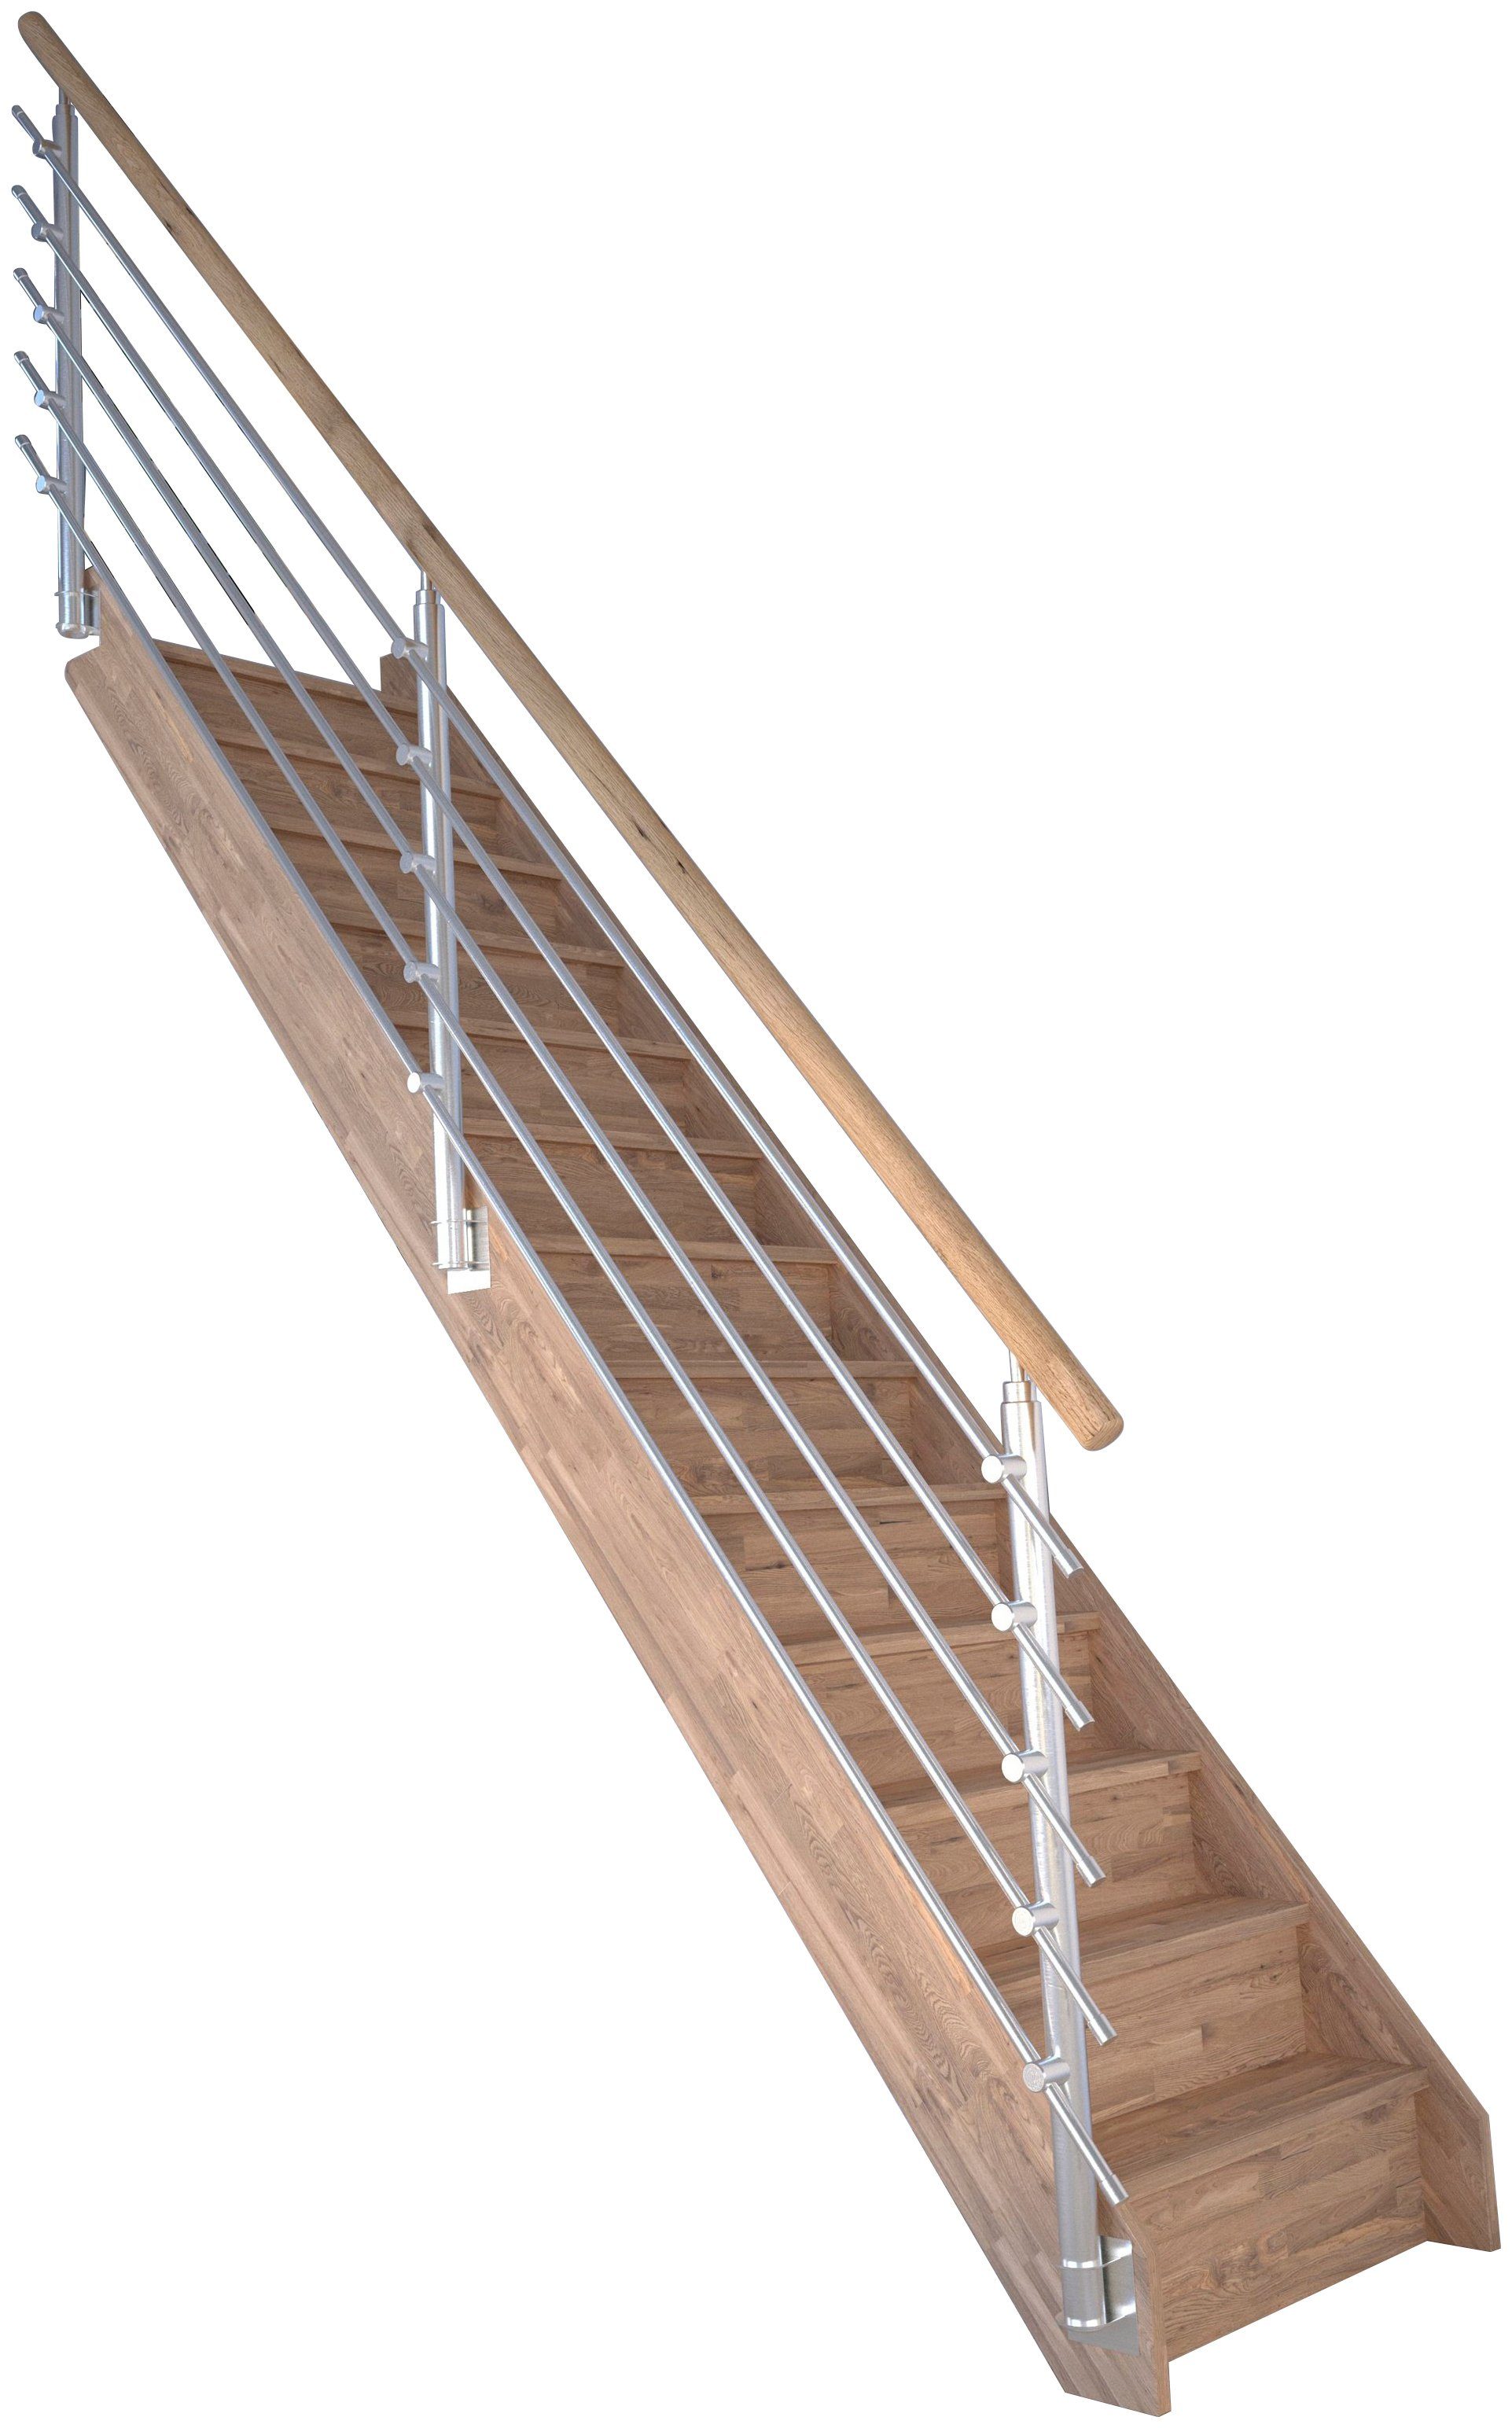 Starwood Raumspartreppe Massivholz Rhodos, Design-Geländer Edelstahl, für Geschosshöhen bis 300 cm, Stufen geschlossen, Durchgehende Wangenteile